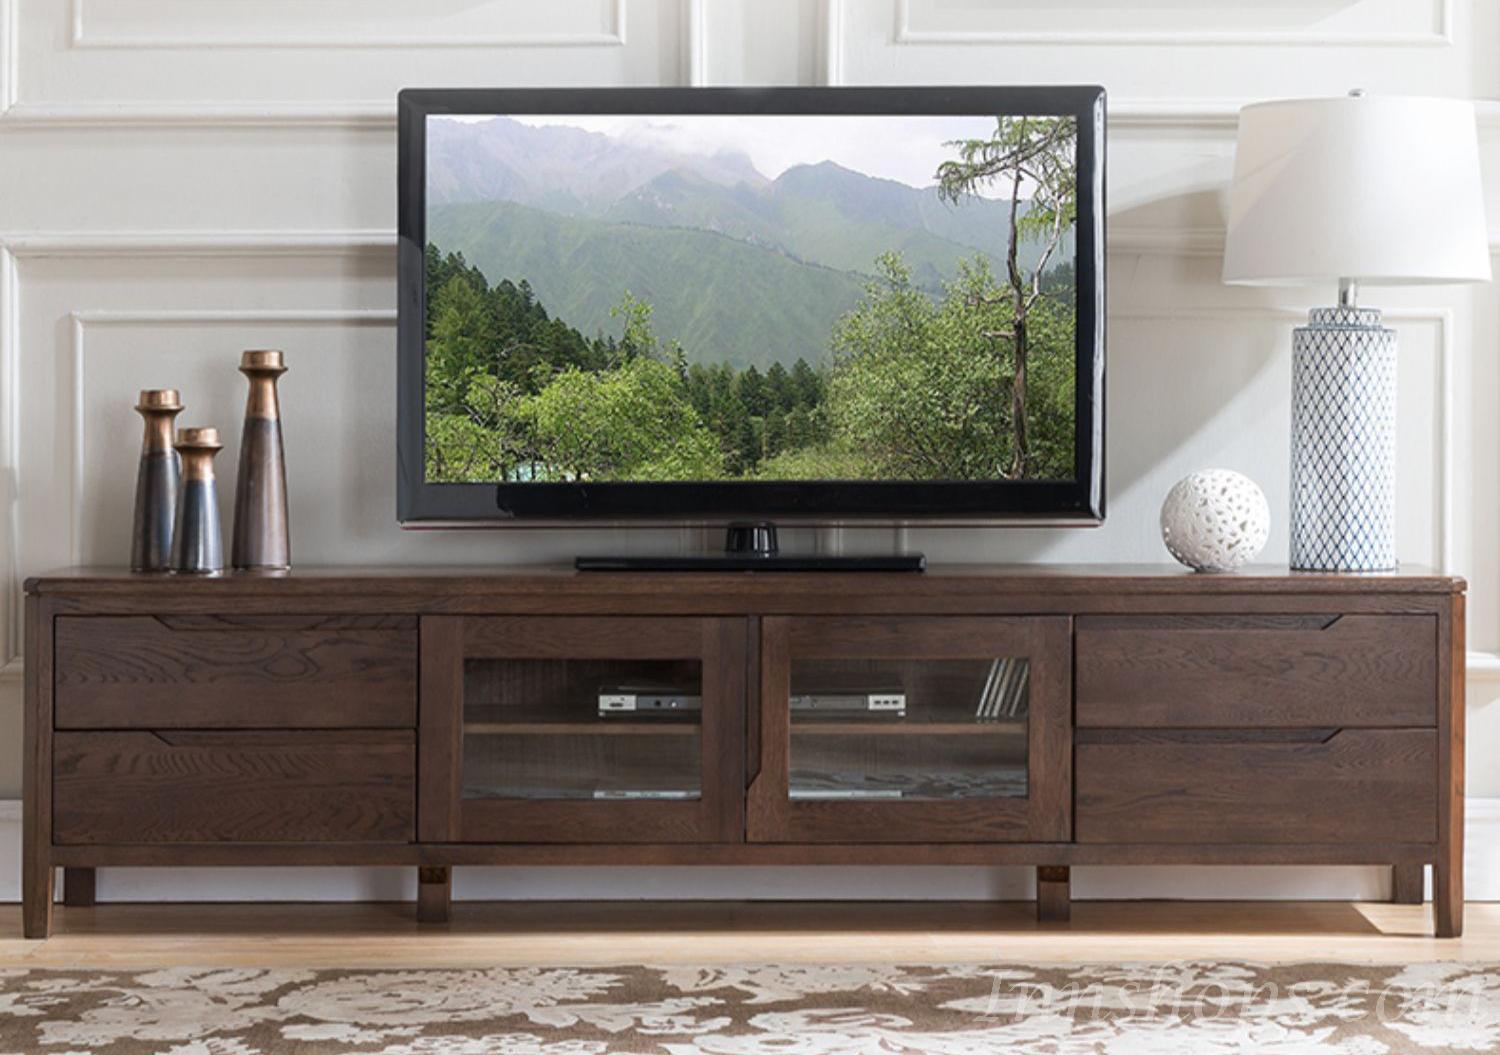 北歐實木系列 白橡木電視櫃 180cm/200cm  (IS5871)